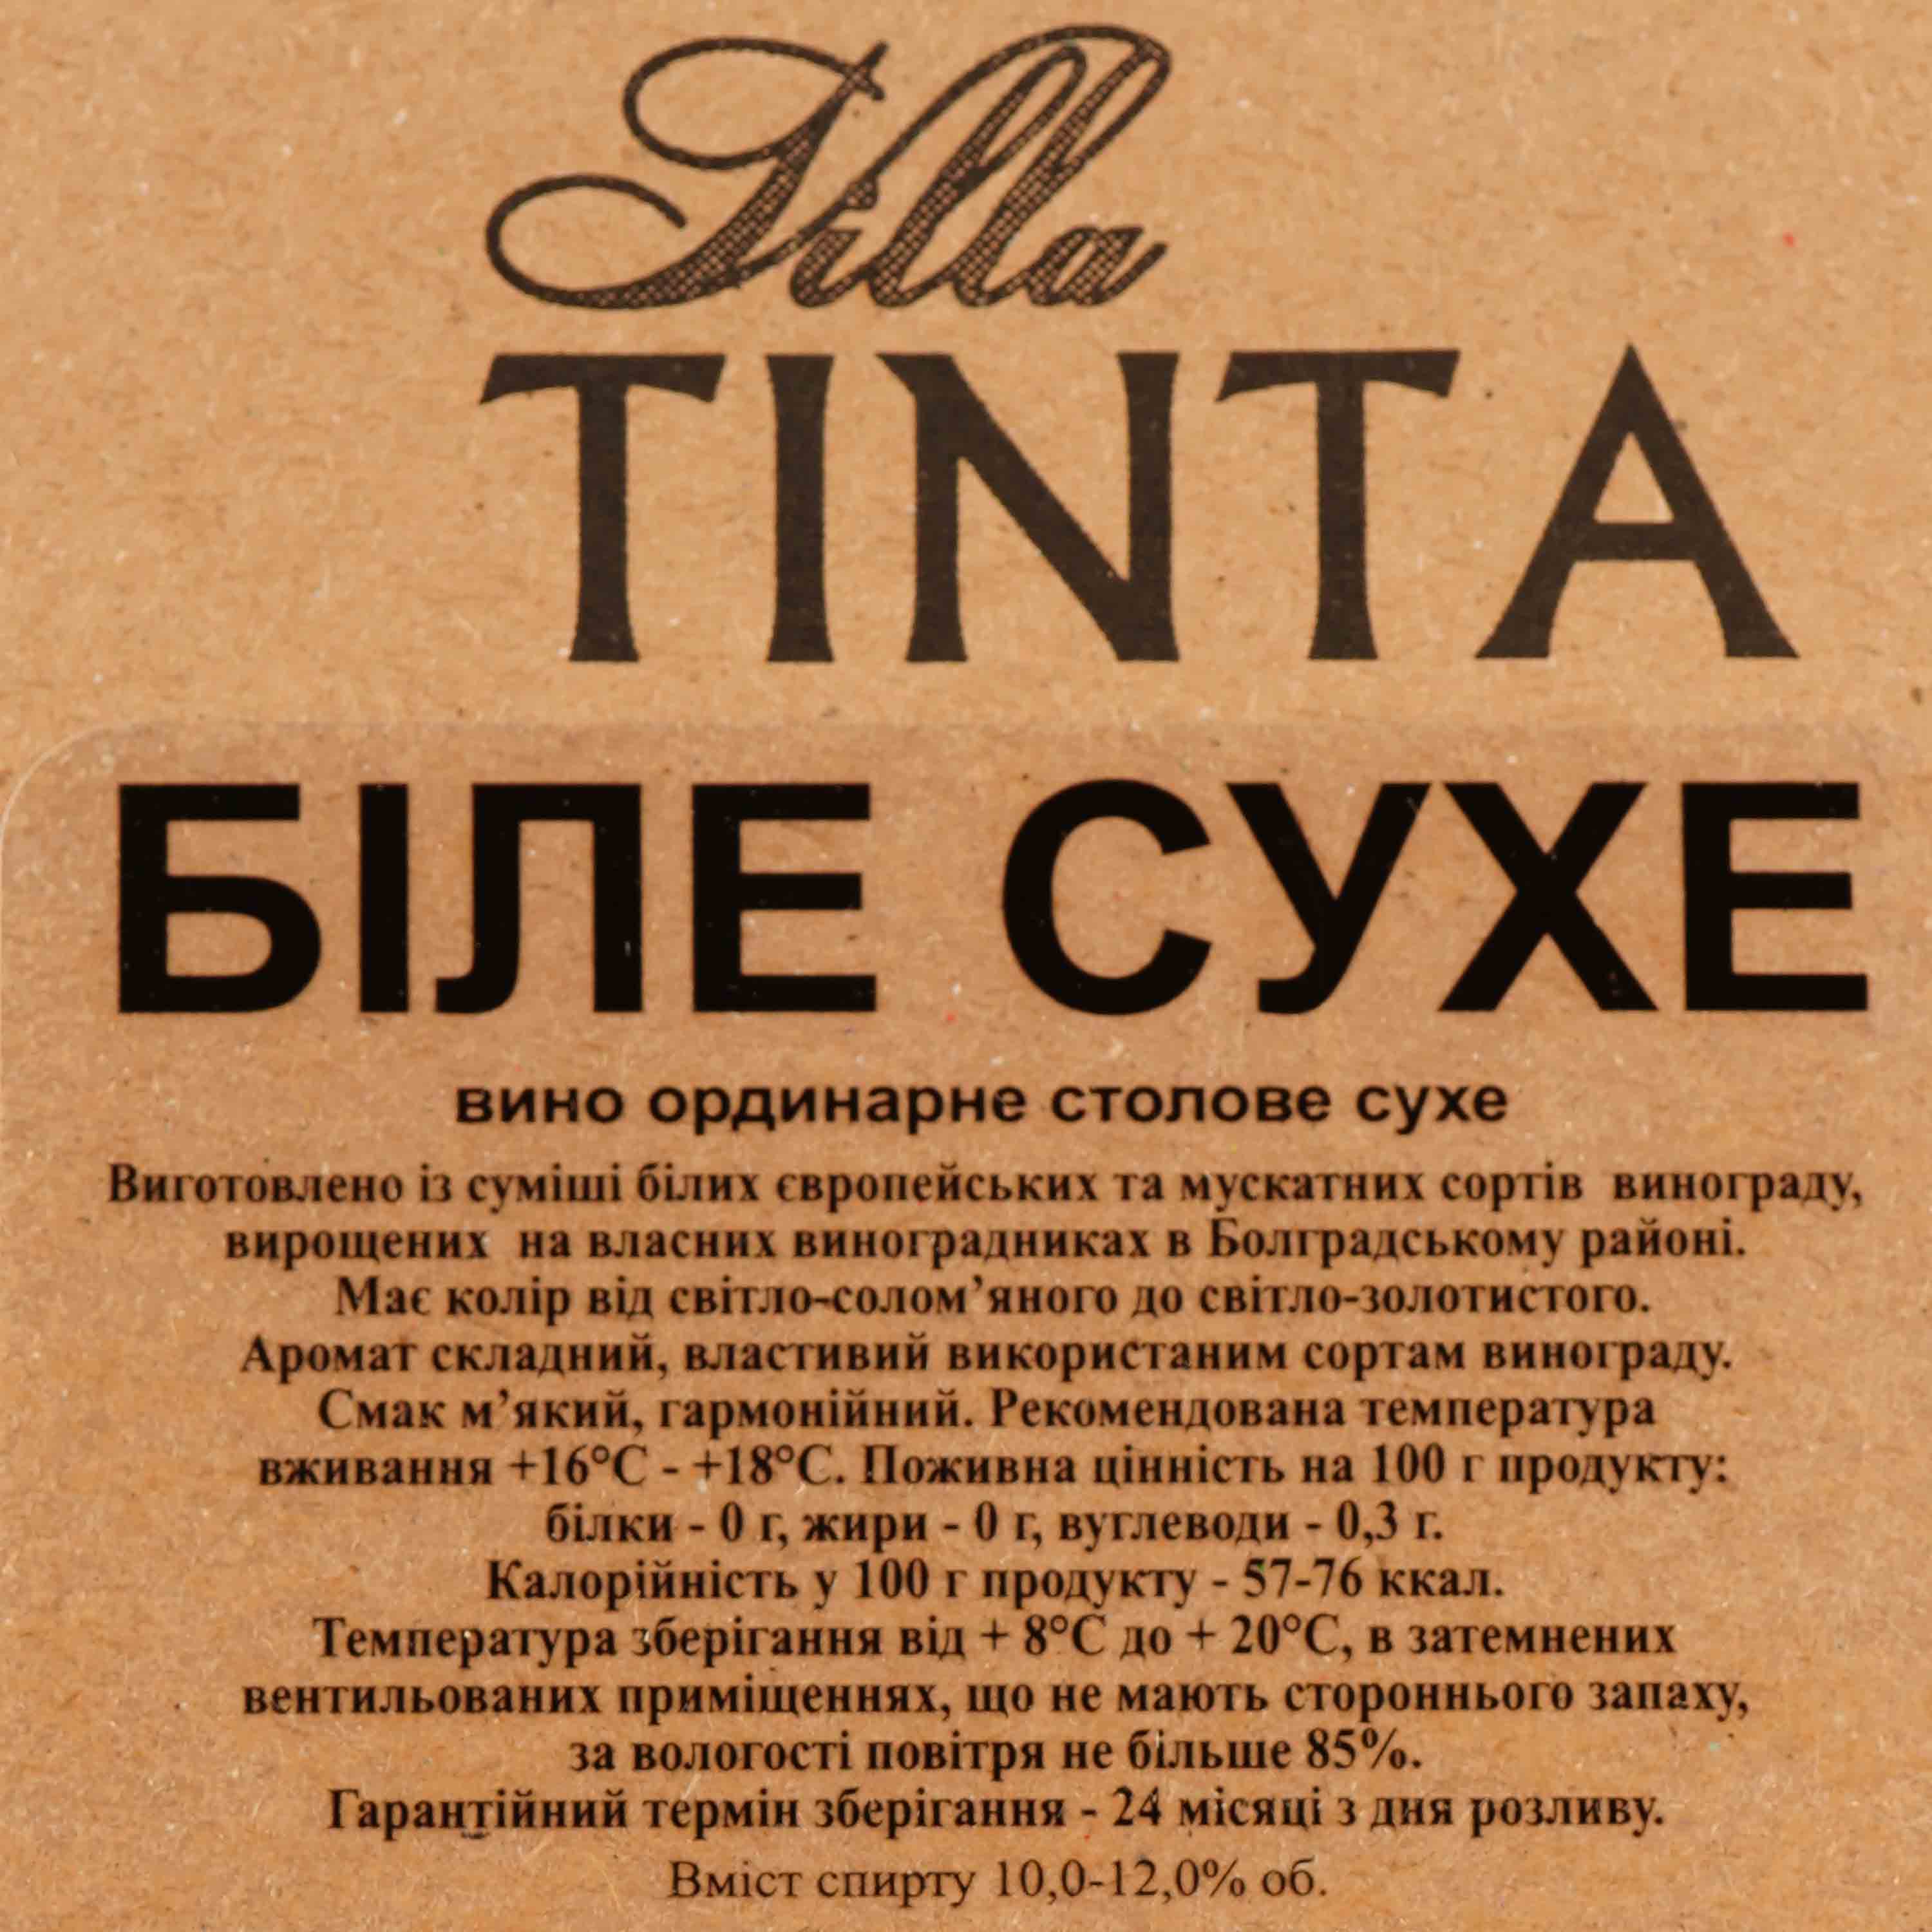 Вино Villa Tinta, біле, сухе, 10-12%, 3 л (8000019387889) - фото 5